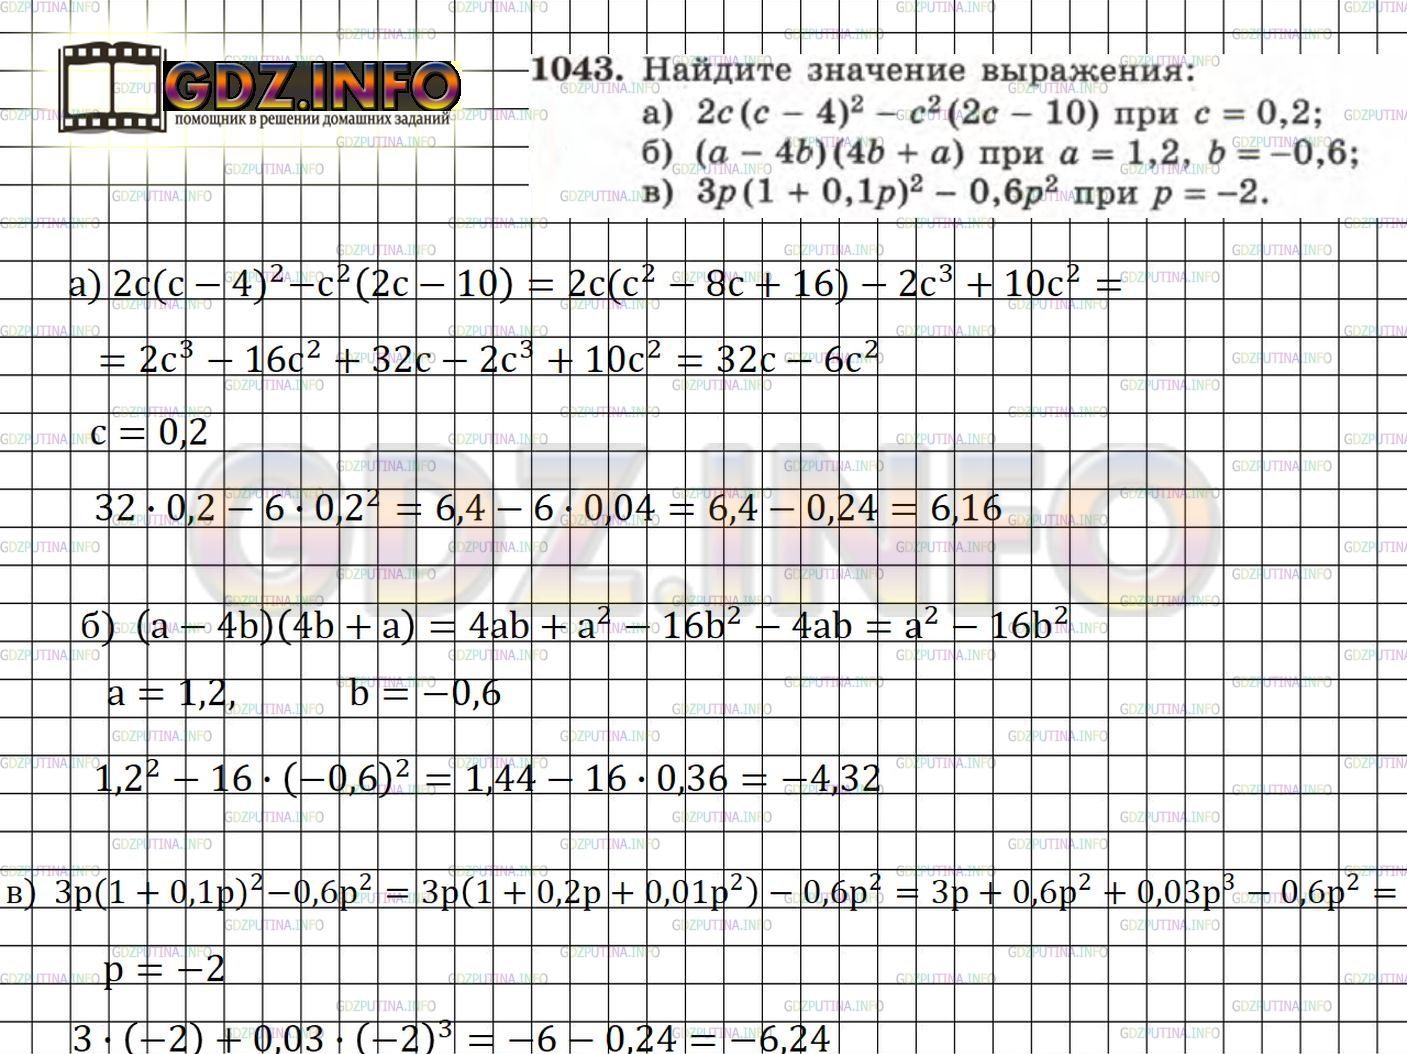 Фото решения 5: Номер задания №1043 из ГДЗ по Алгебре 7 класс: Макарычев Ю.Н. г.